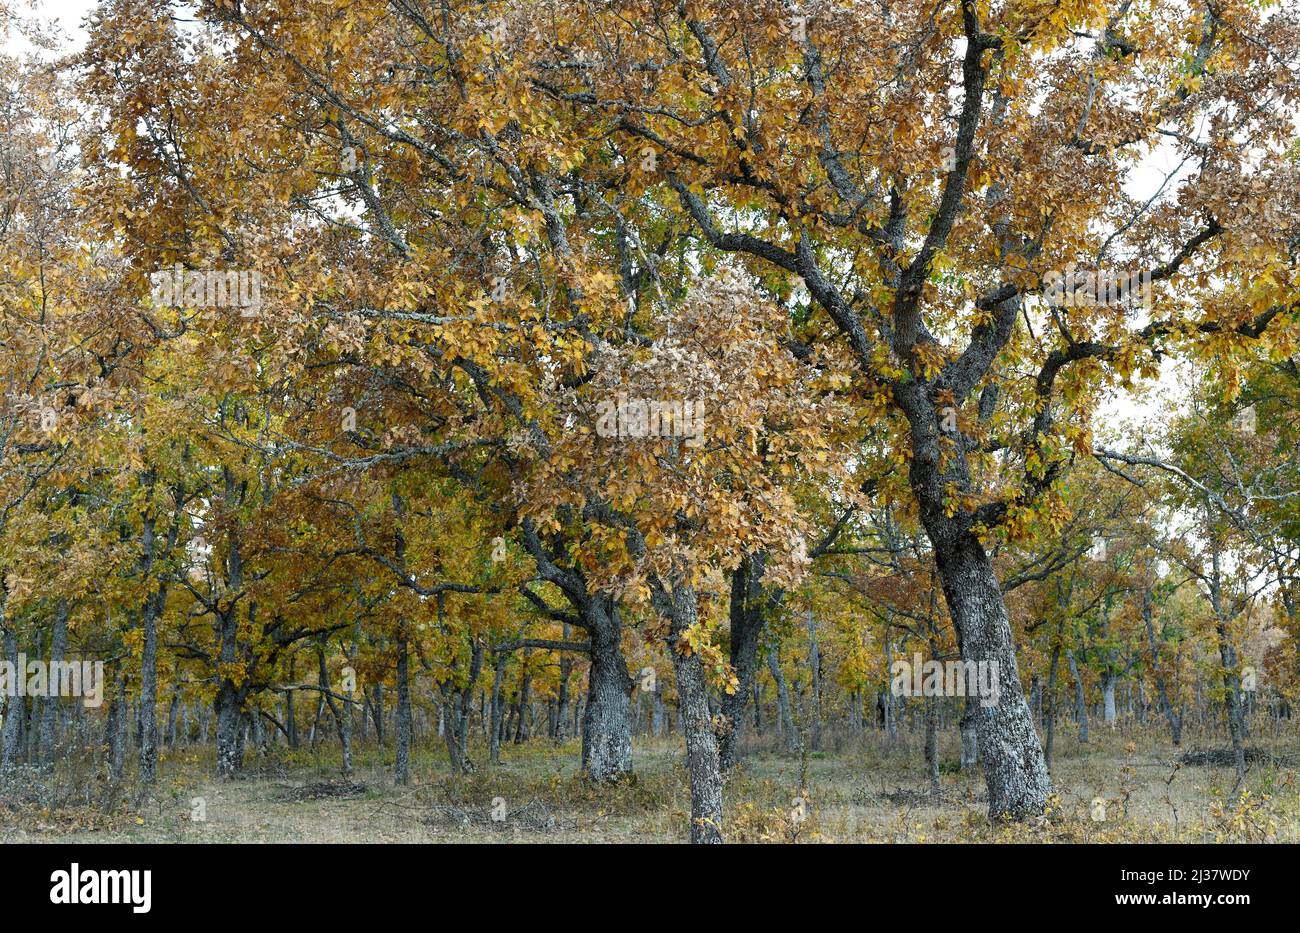 El roble pirenaico (Quercus pyrenaica) es un árbol caducifolio nativo de la cuenca occidental del Mediterráneo (Península Ibérica, montañas del oeste de Francia y Marruecos). Foto de stock